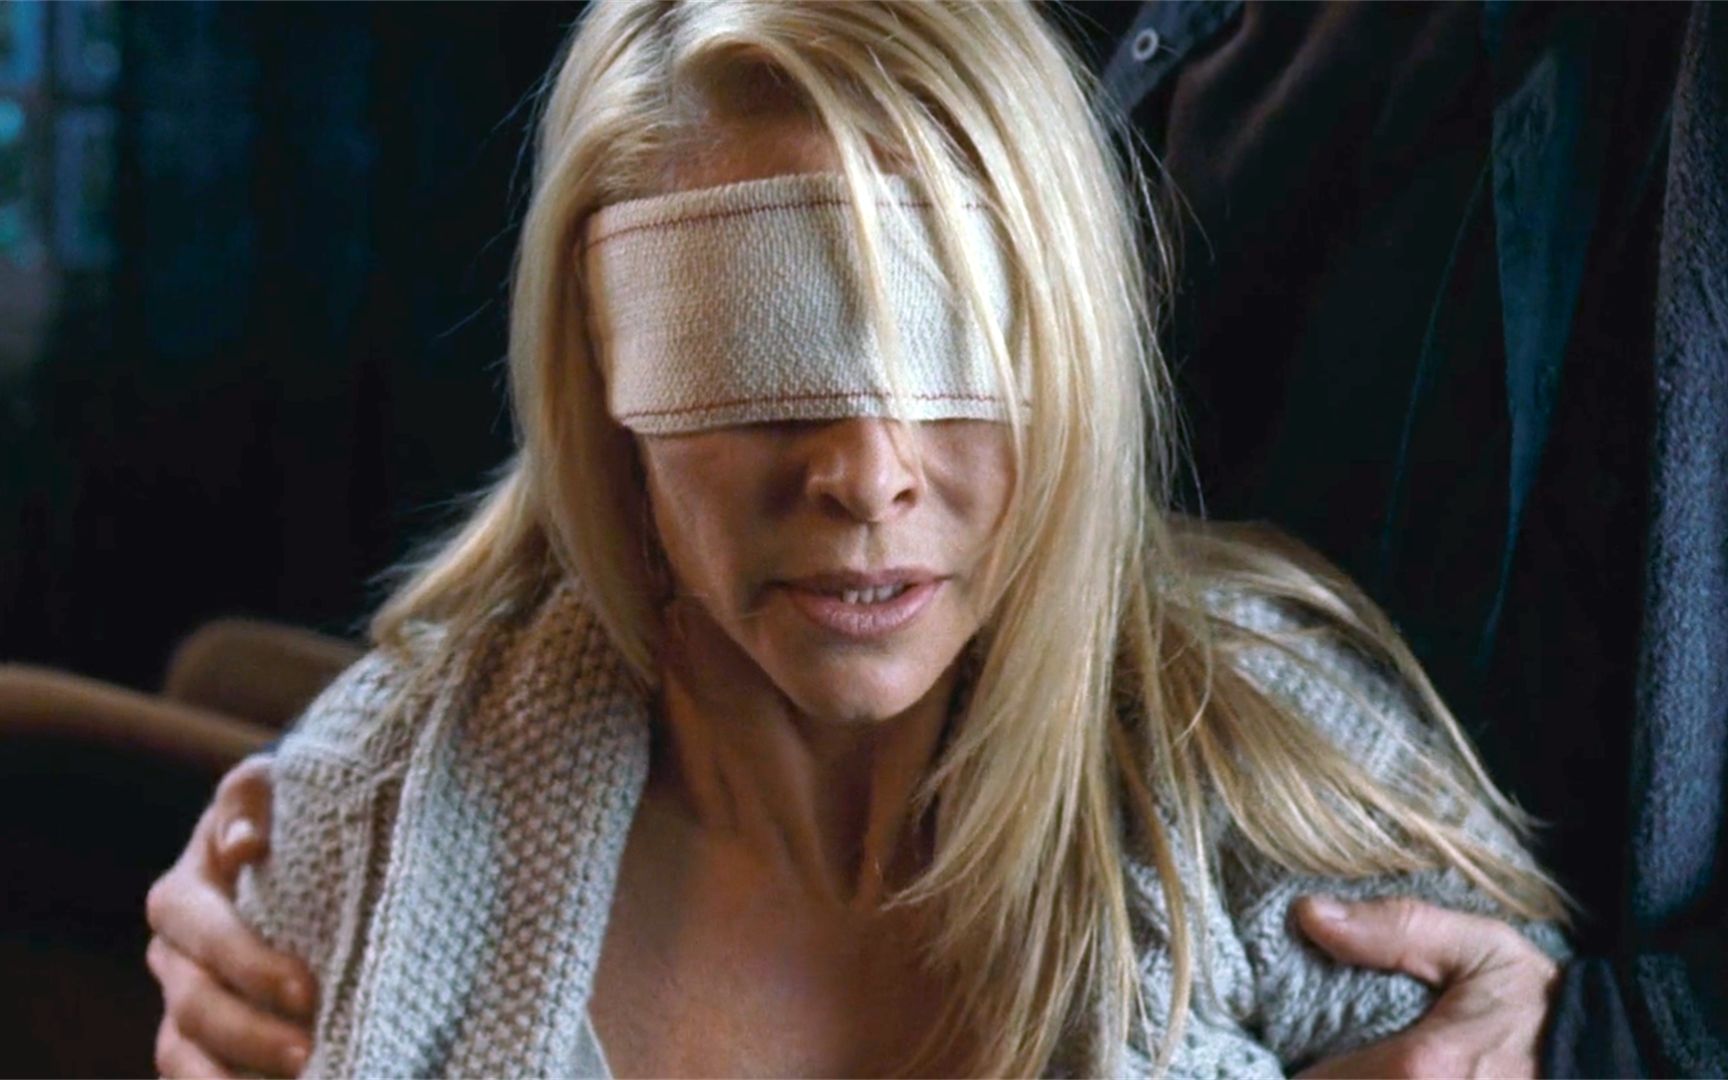 盲女恢复视力，发现身边的护工正在杀人，她冷静装瞎反杀，惊悚片